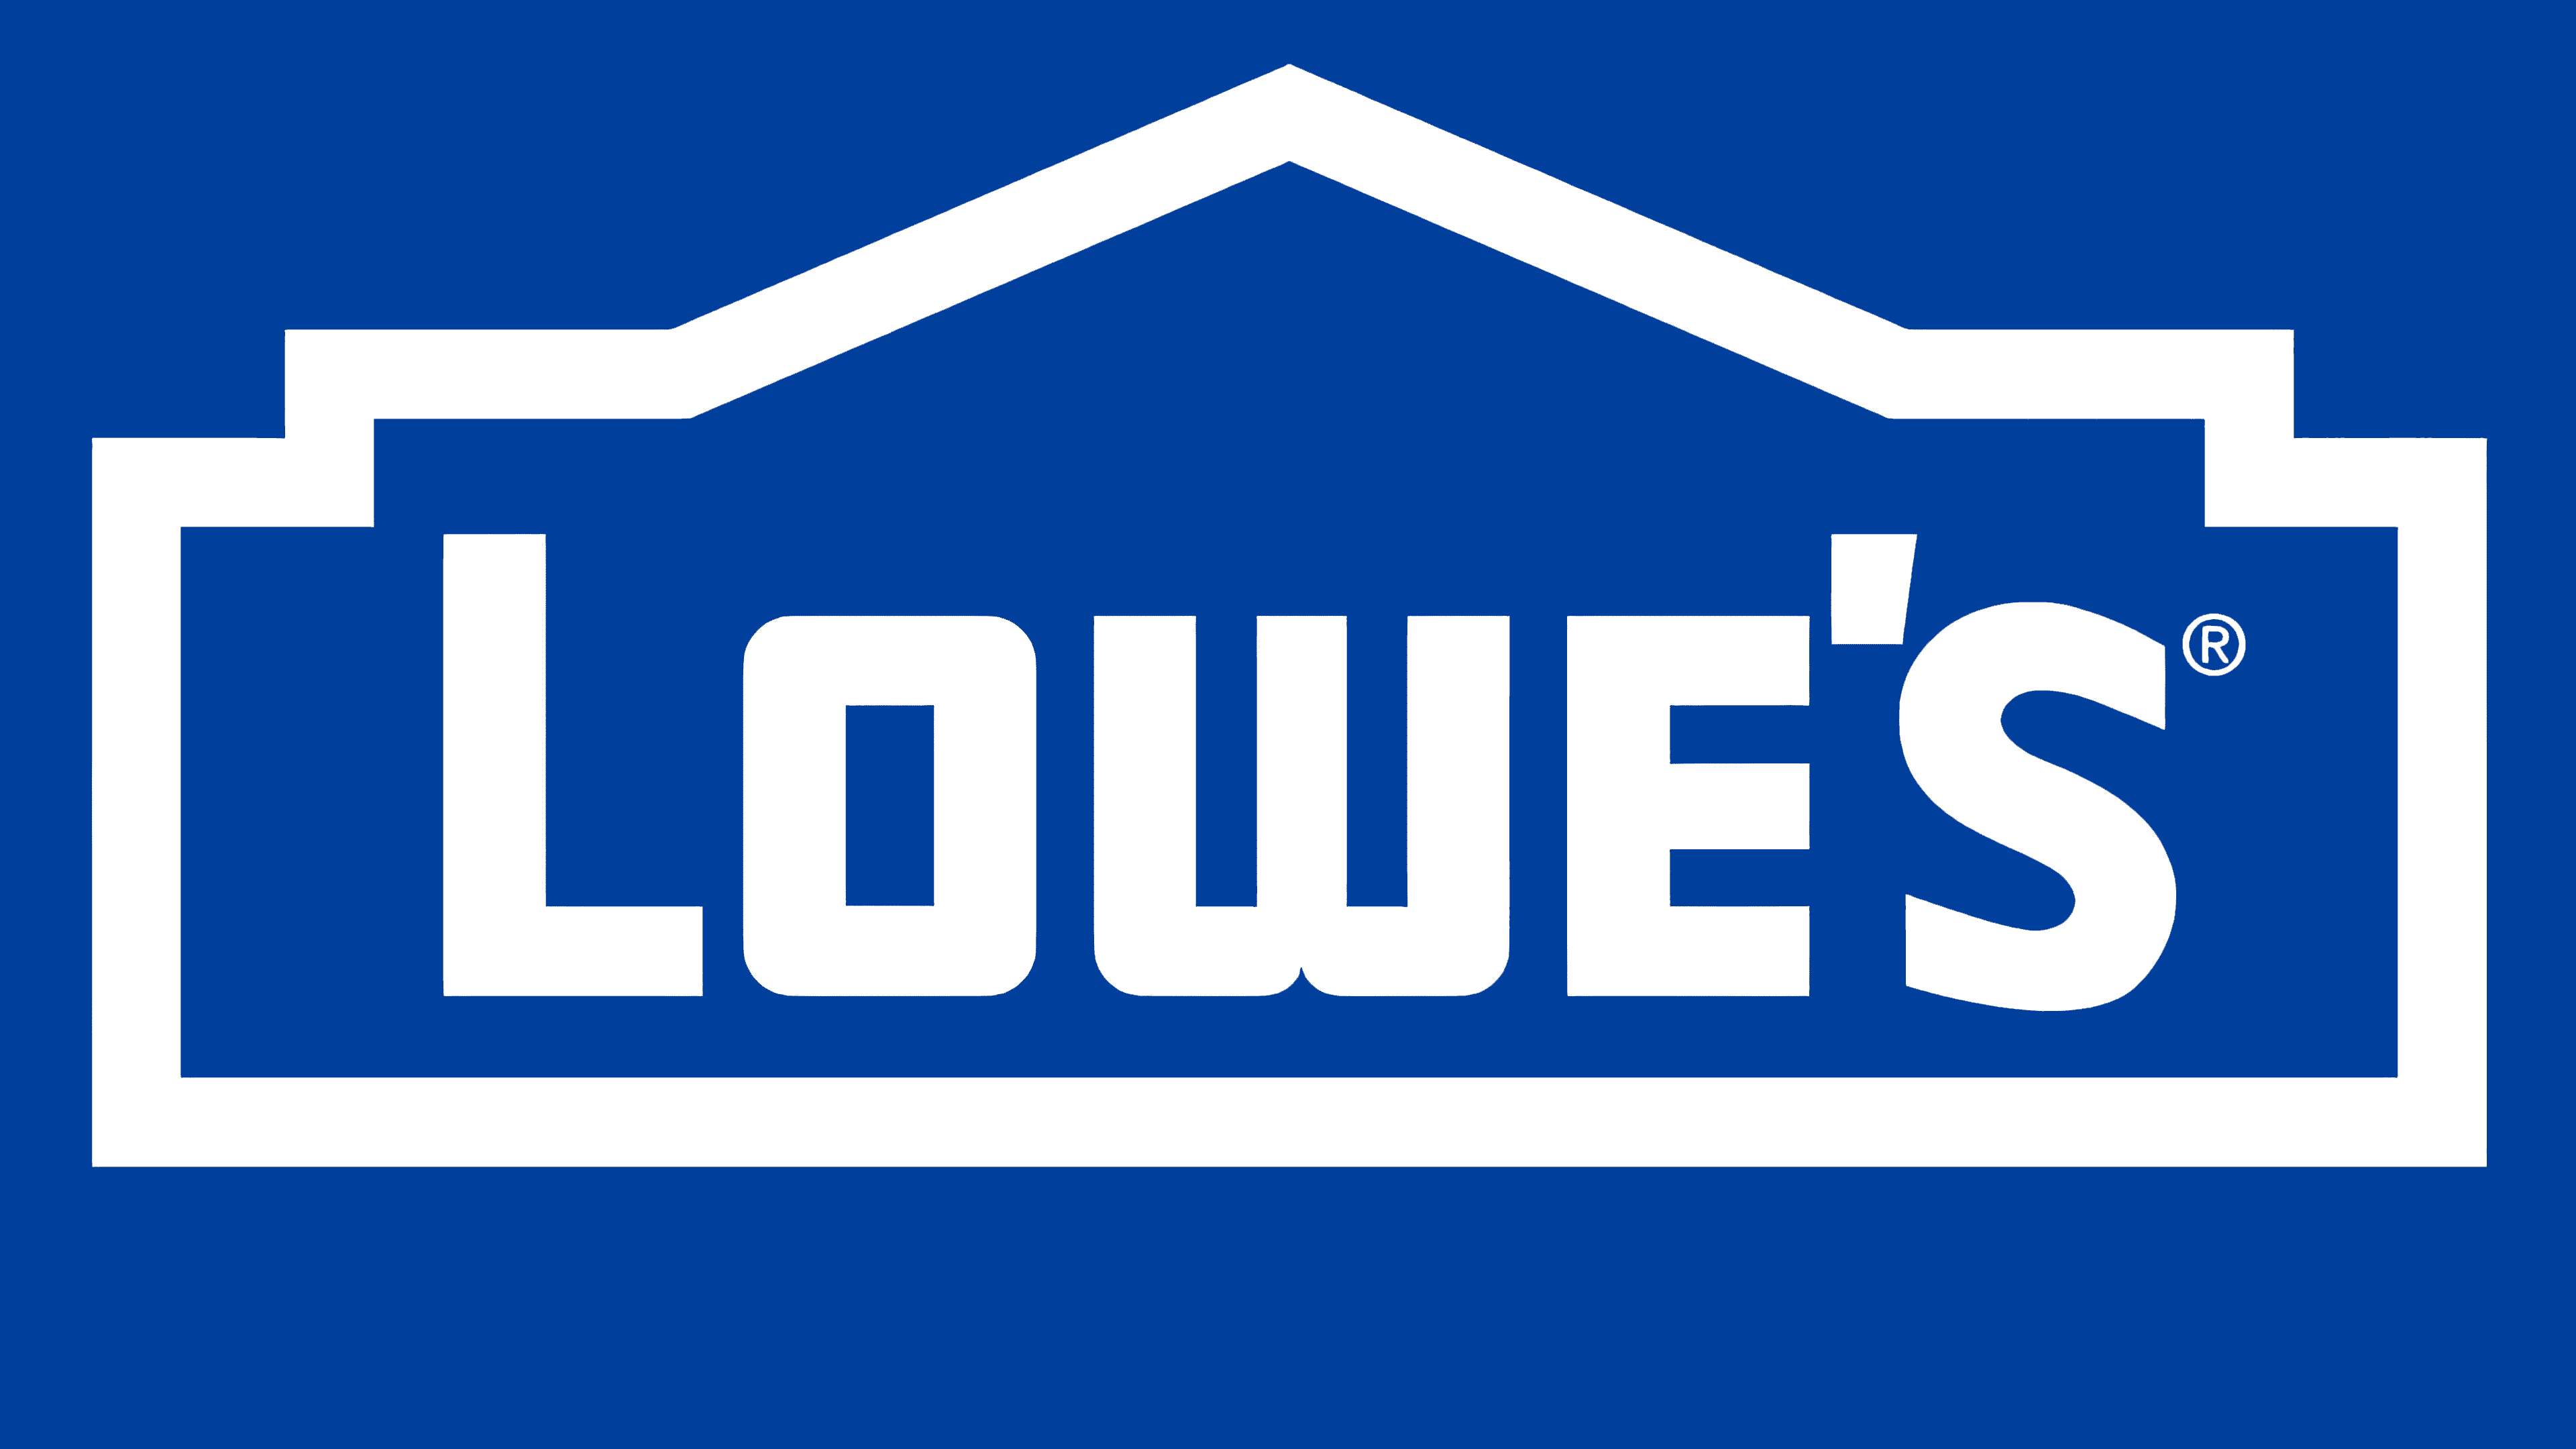 Lowes-Emblem.png (3840×2160)